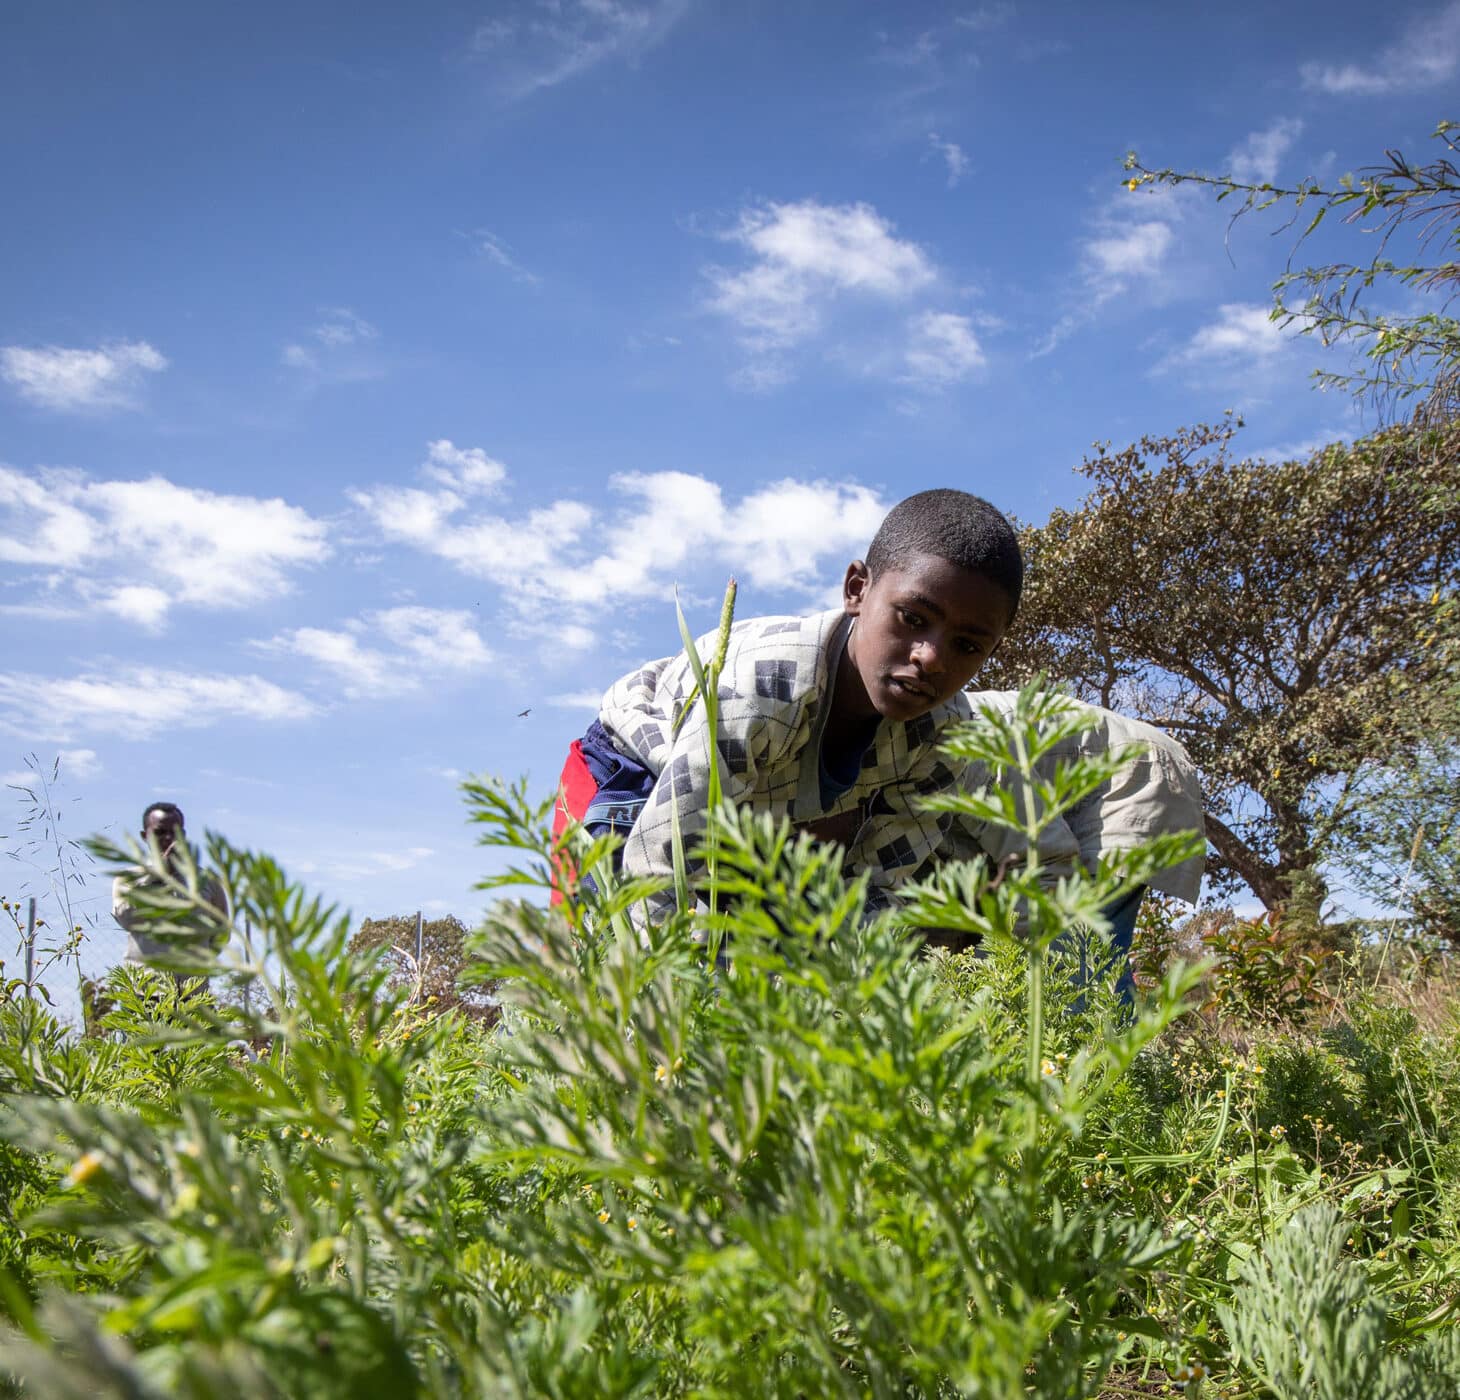 En gutt fra Etiopia står ute i en åker, han har mønstrete skjorte og rød og blå shorts. Bak ham står det en mann. Det er trær i bakgrunnen og en høy blå himmel. Foto: Petterik Wiggers